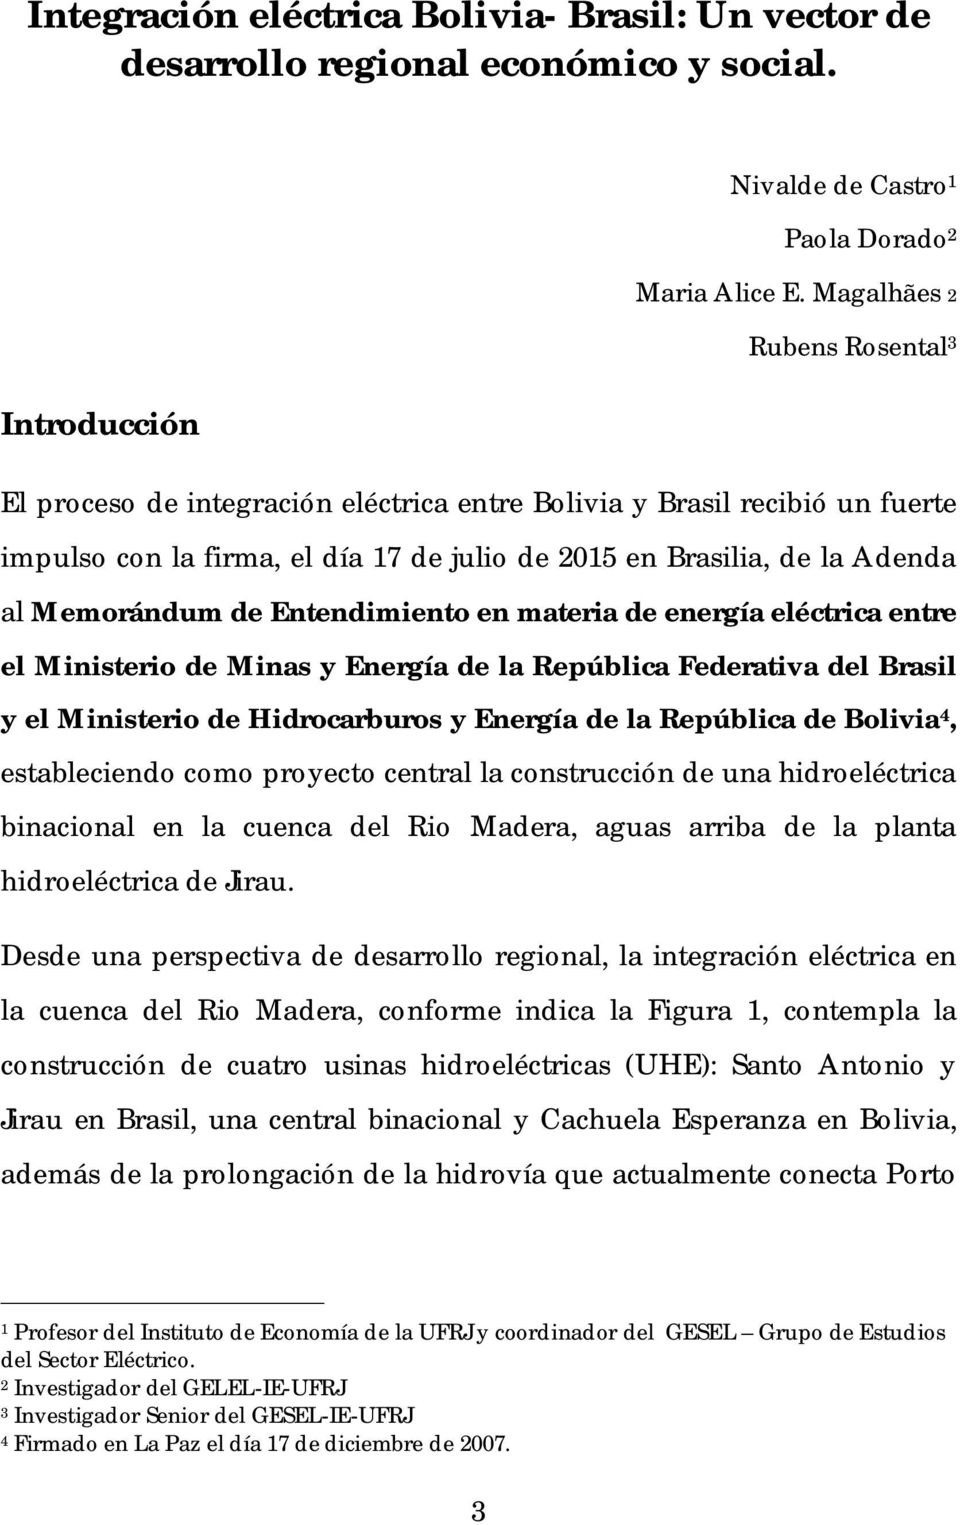 Entendimiento en materia de energía eléctrica entre el Ministerio de Minas y Energía de la República Federativa del Brasil y el Ministerio de Hidrocarburos y Energía de la República de Bolivia 4,